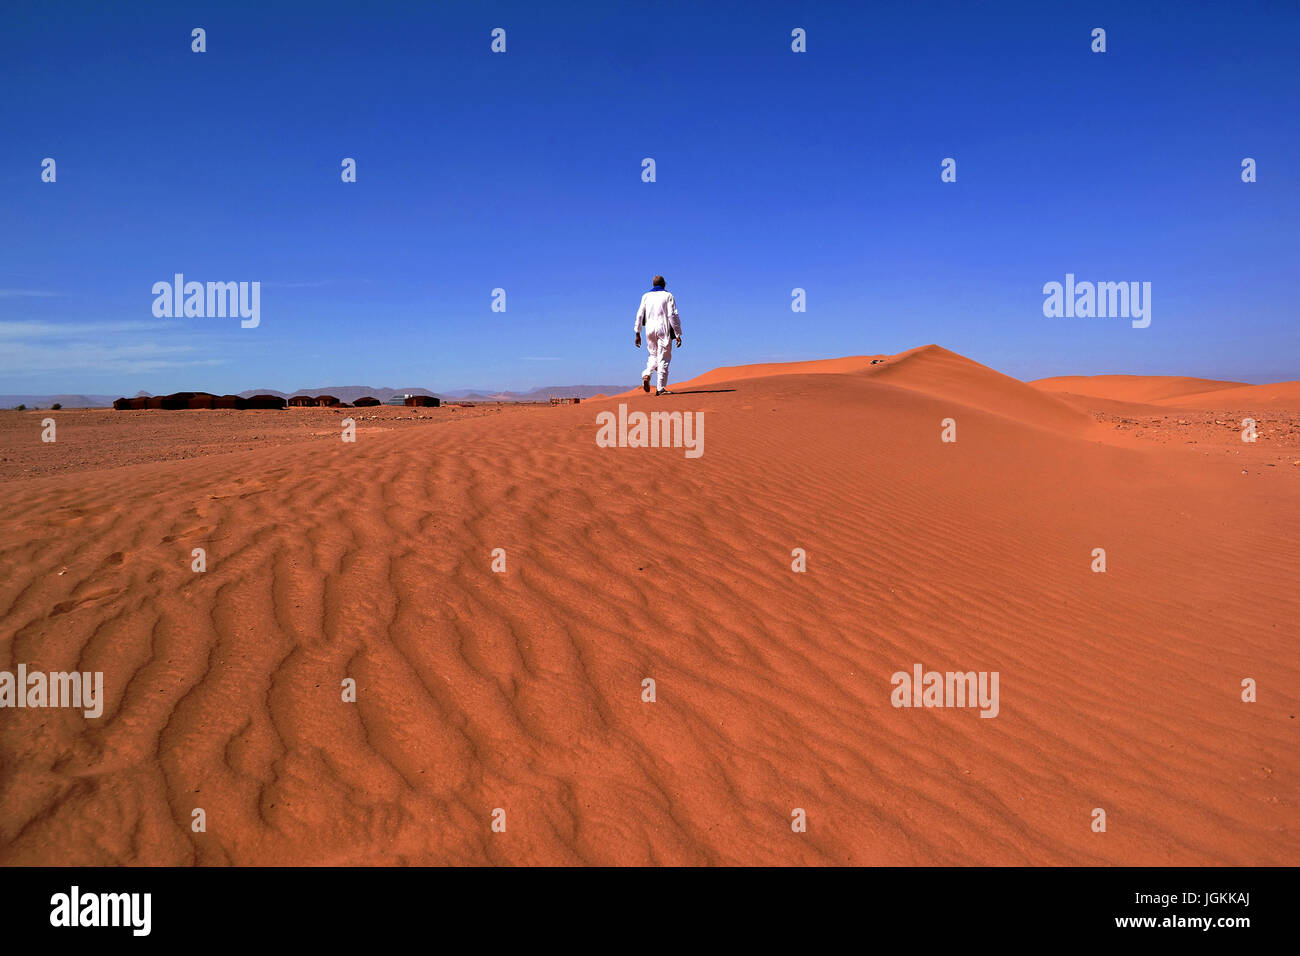 Berber man on desert sand dunes, Zagora, Morocco Stock Photo